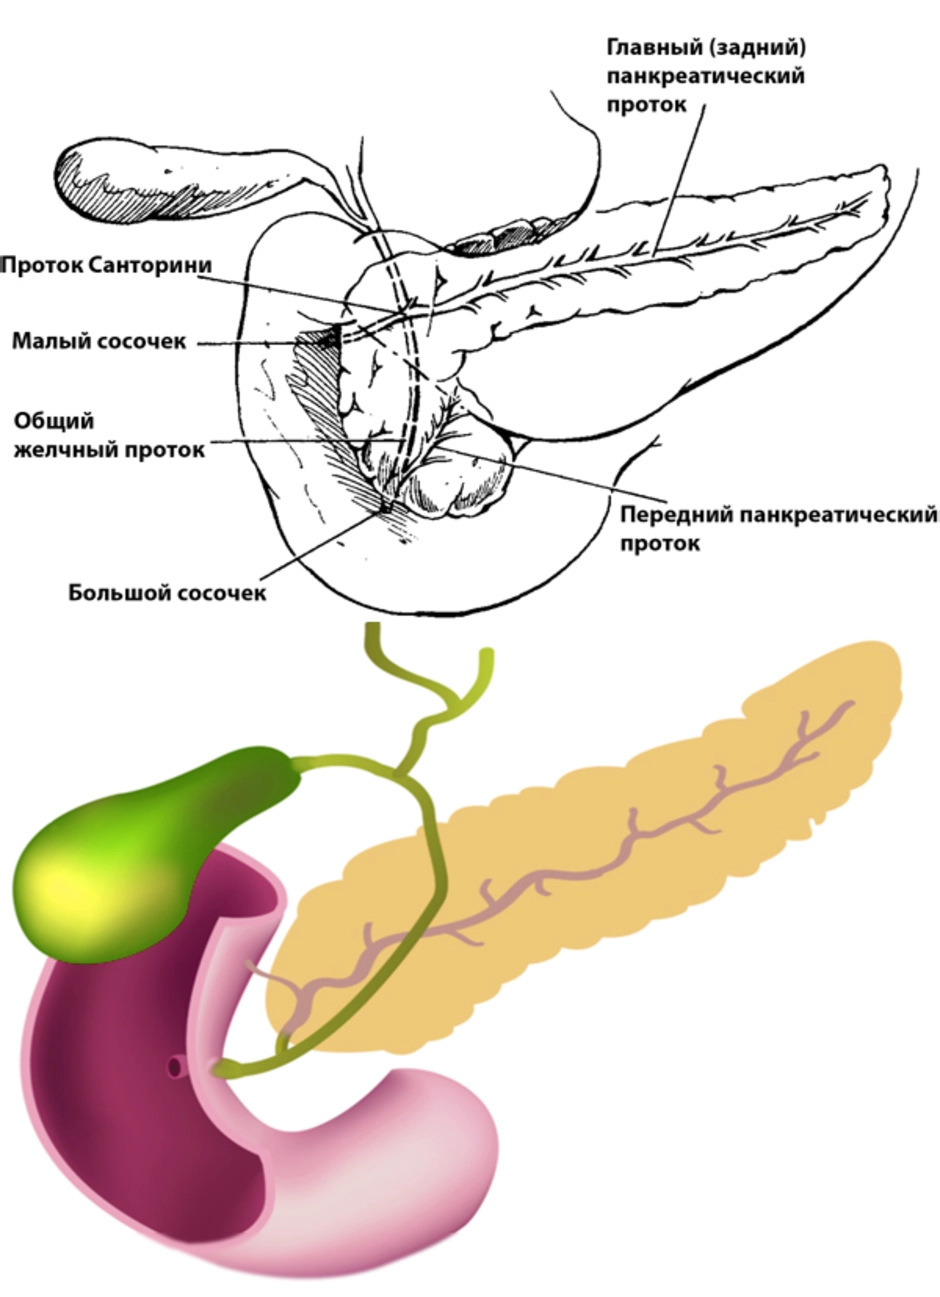 Покажи картинку поджелудочной железы. Анатомия поджелудочная железа расположение. Поджелудочная железа схема. Внутренние органы человека поджелудочная железа схема расположения. Строение поджелудочной железы анатомия.